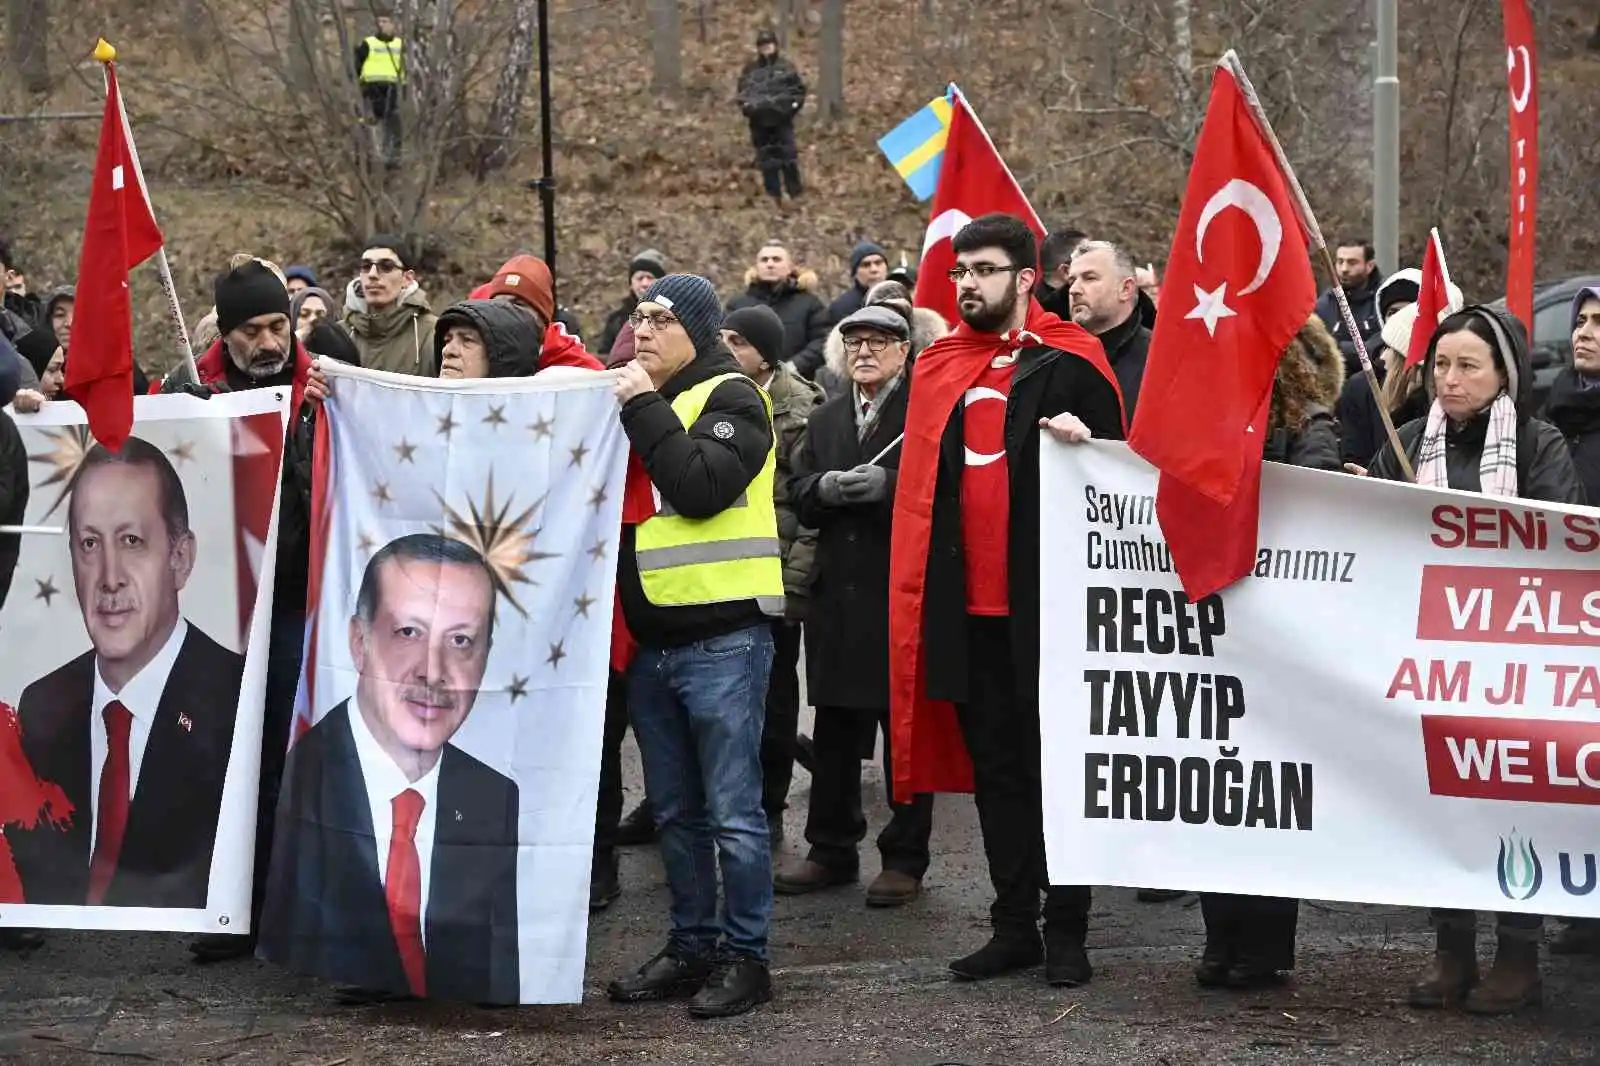 İsveç’te Avrupa Türk Demokratlar Birliği’nden Cumhurbaşkanı Erdoğan’a destek
